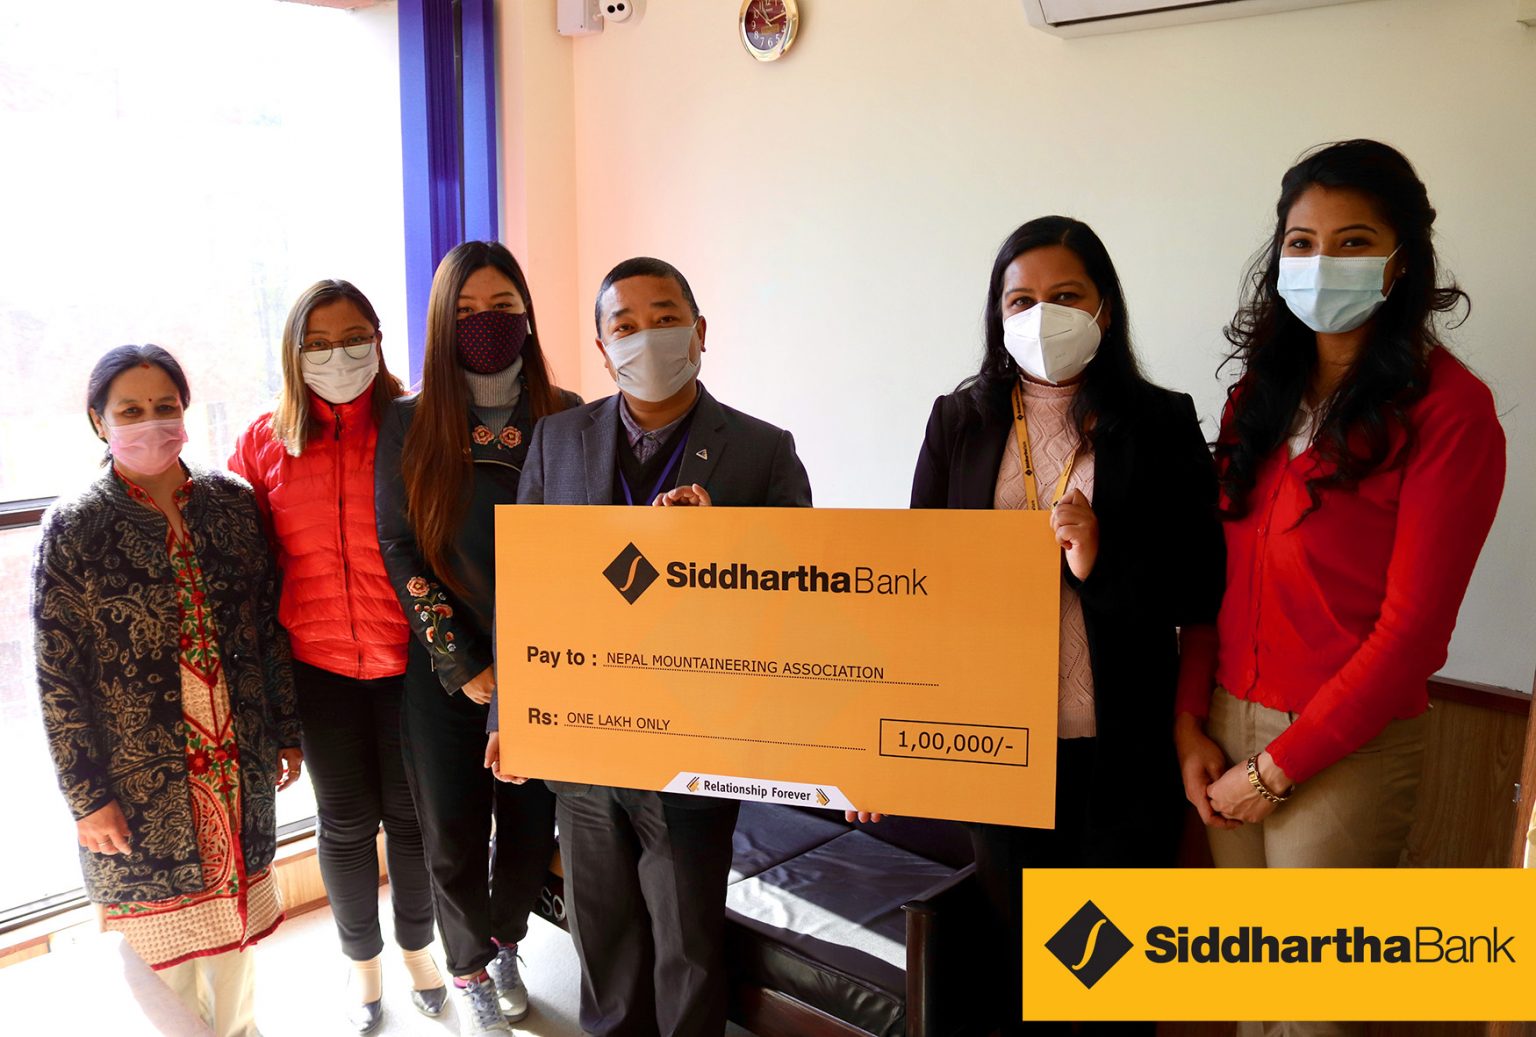 सिद्धार्थ बैंकद्धारा नेपाल पर्वतारोहण संघलाई आर्थिक सहयोग